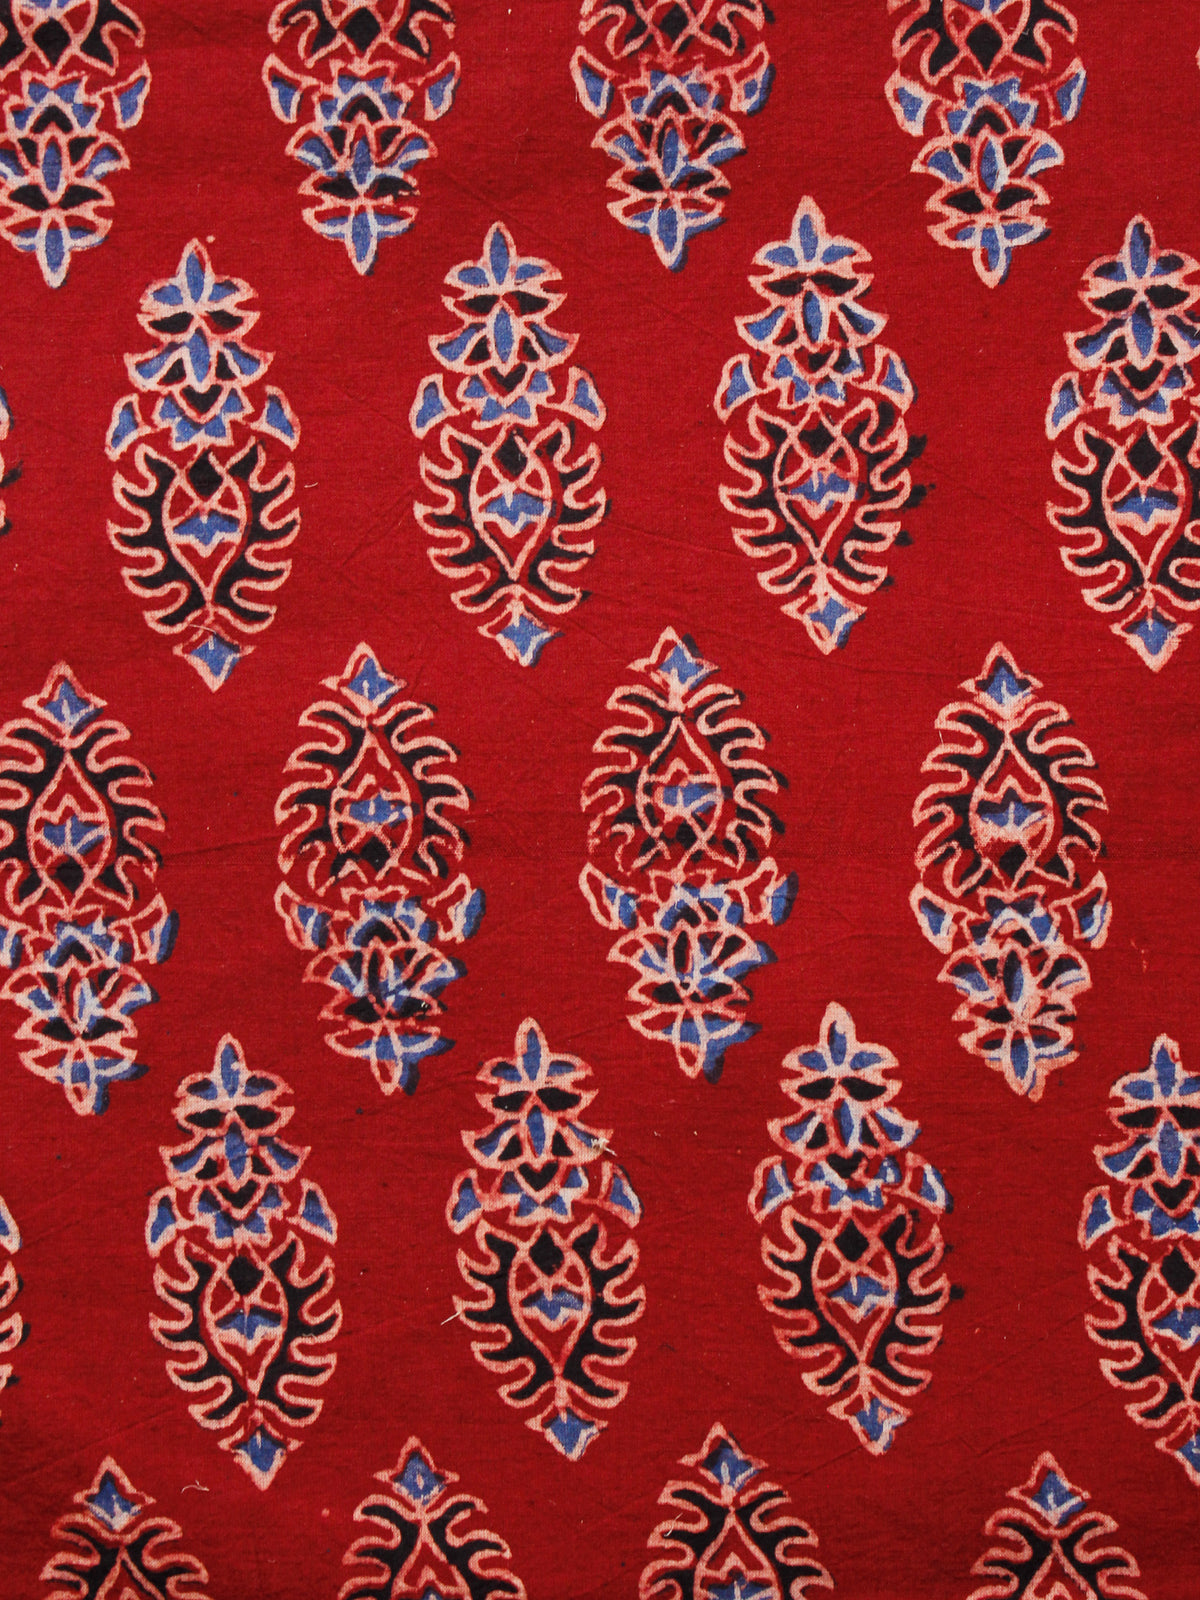 Red Indigo Black Ajrakh Hand Block Printed Cotton Fabric Per Meter - F003F1610